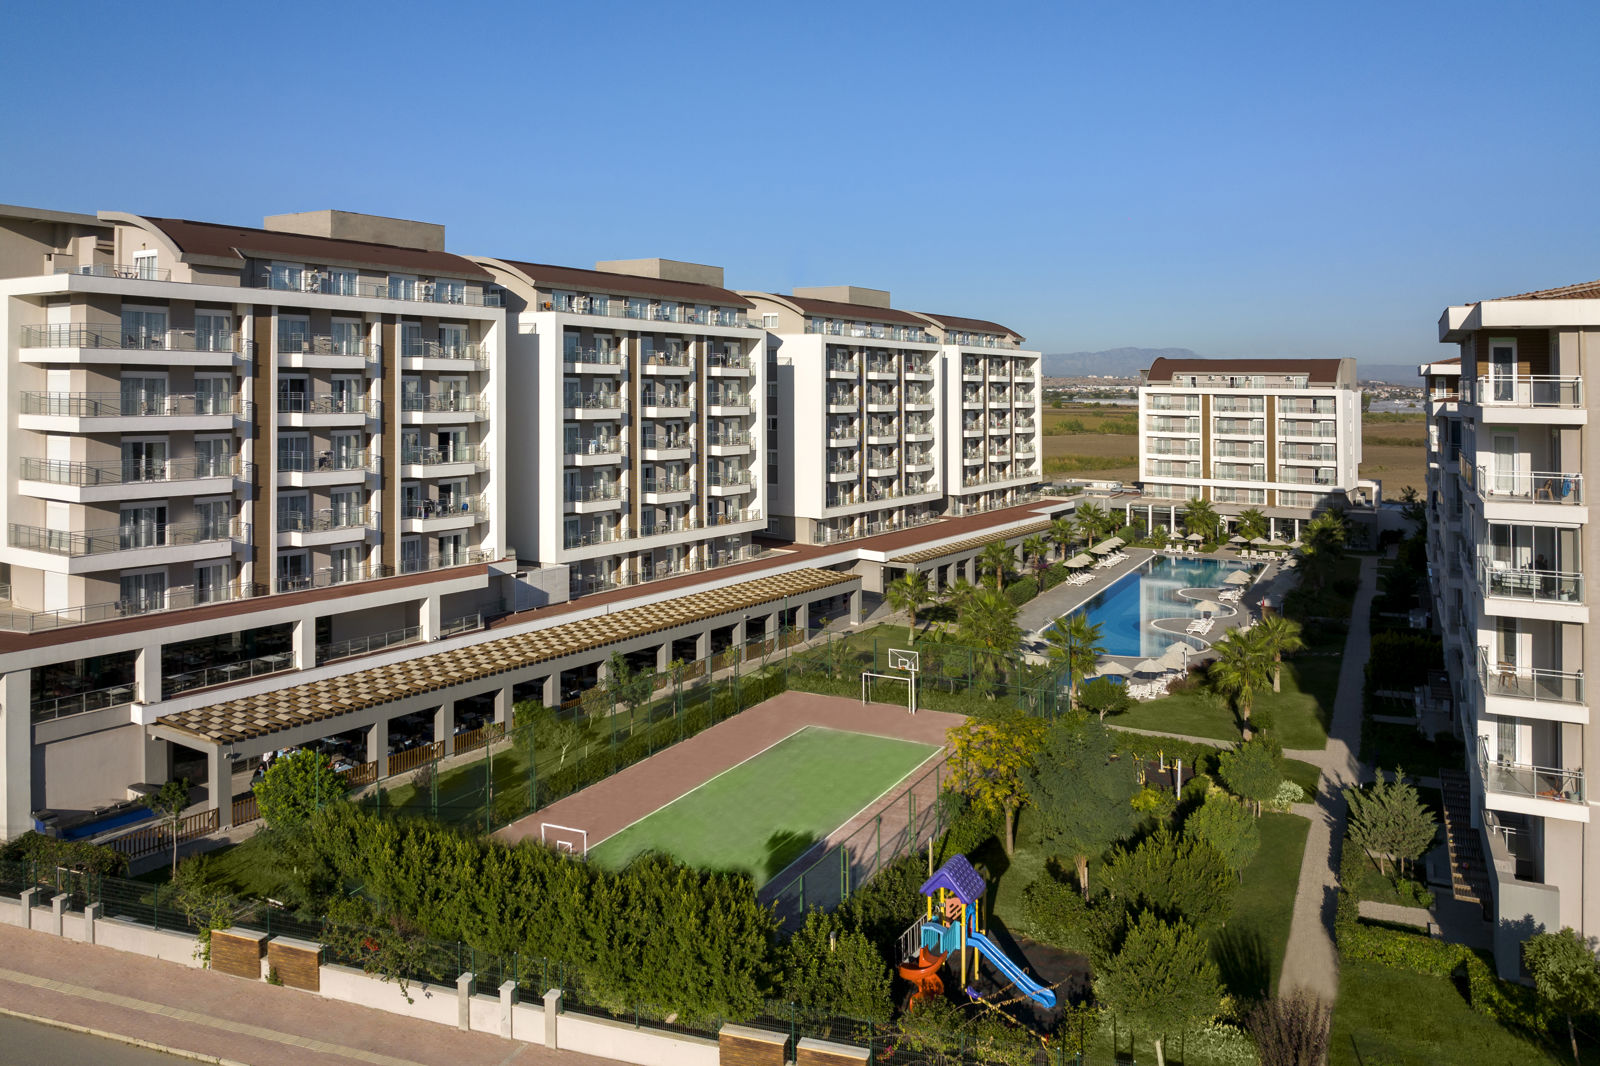 Meer info over Greenwood Suites Resort  bij Corendon